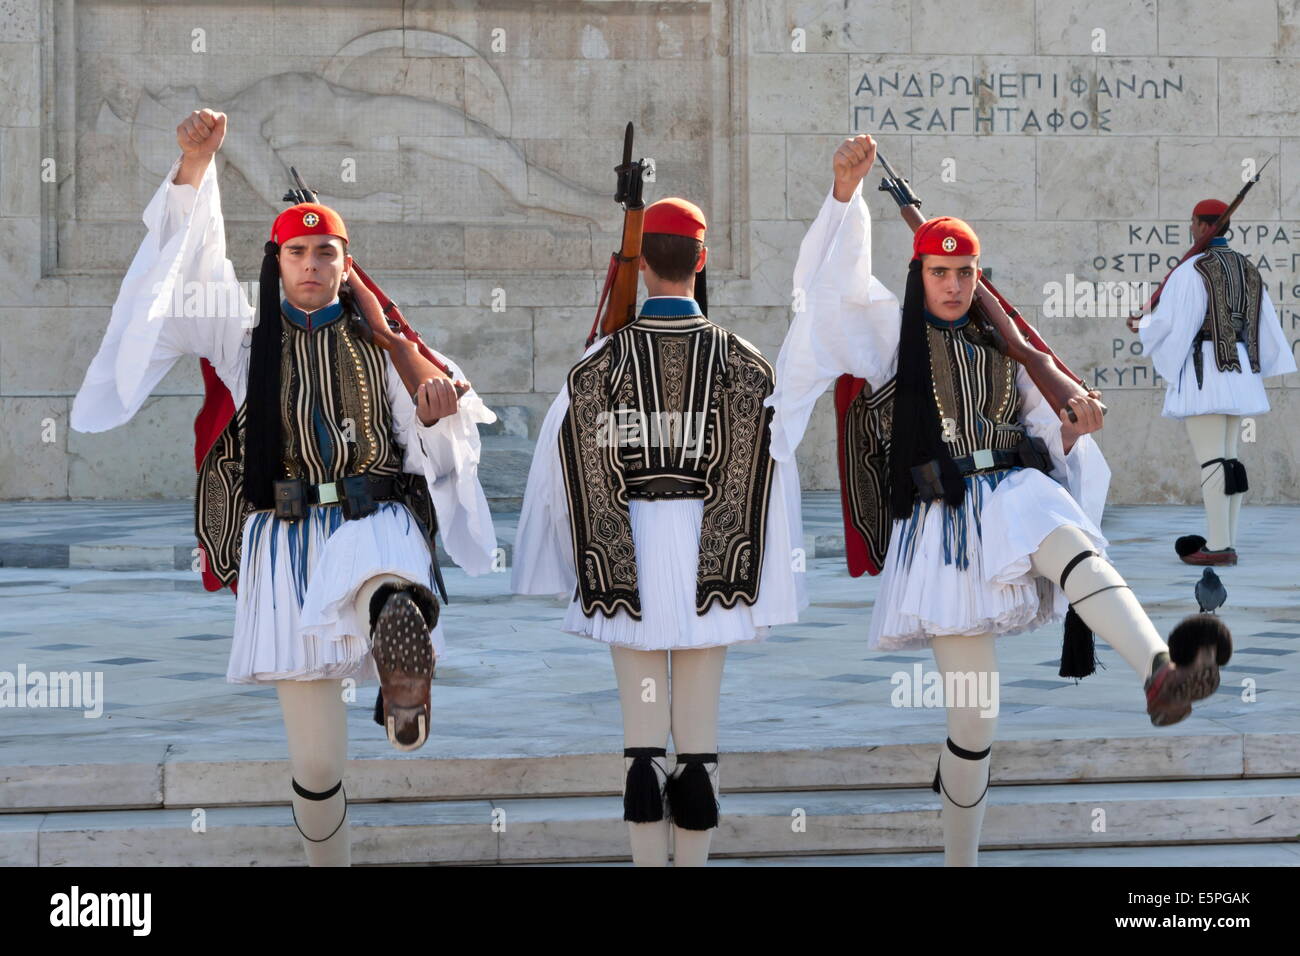 Soldats evzone, relève de la garde, de la Place Syntagma, Athènes, Grèce, Europe Banque D'Images